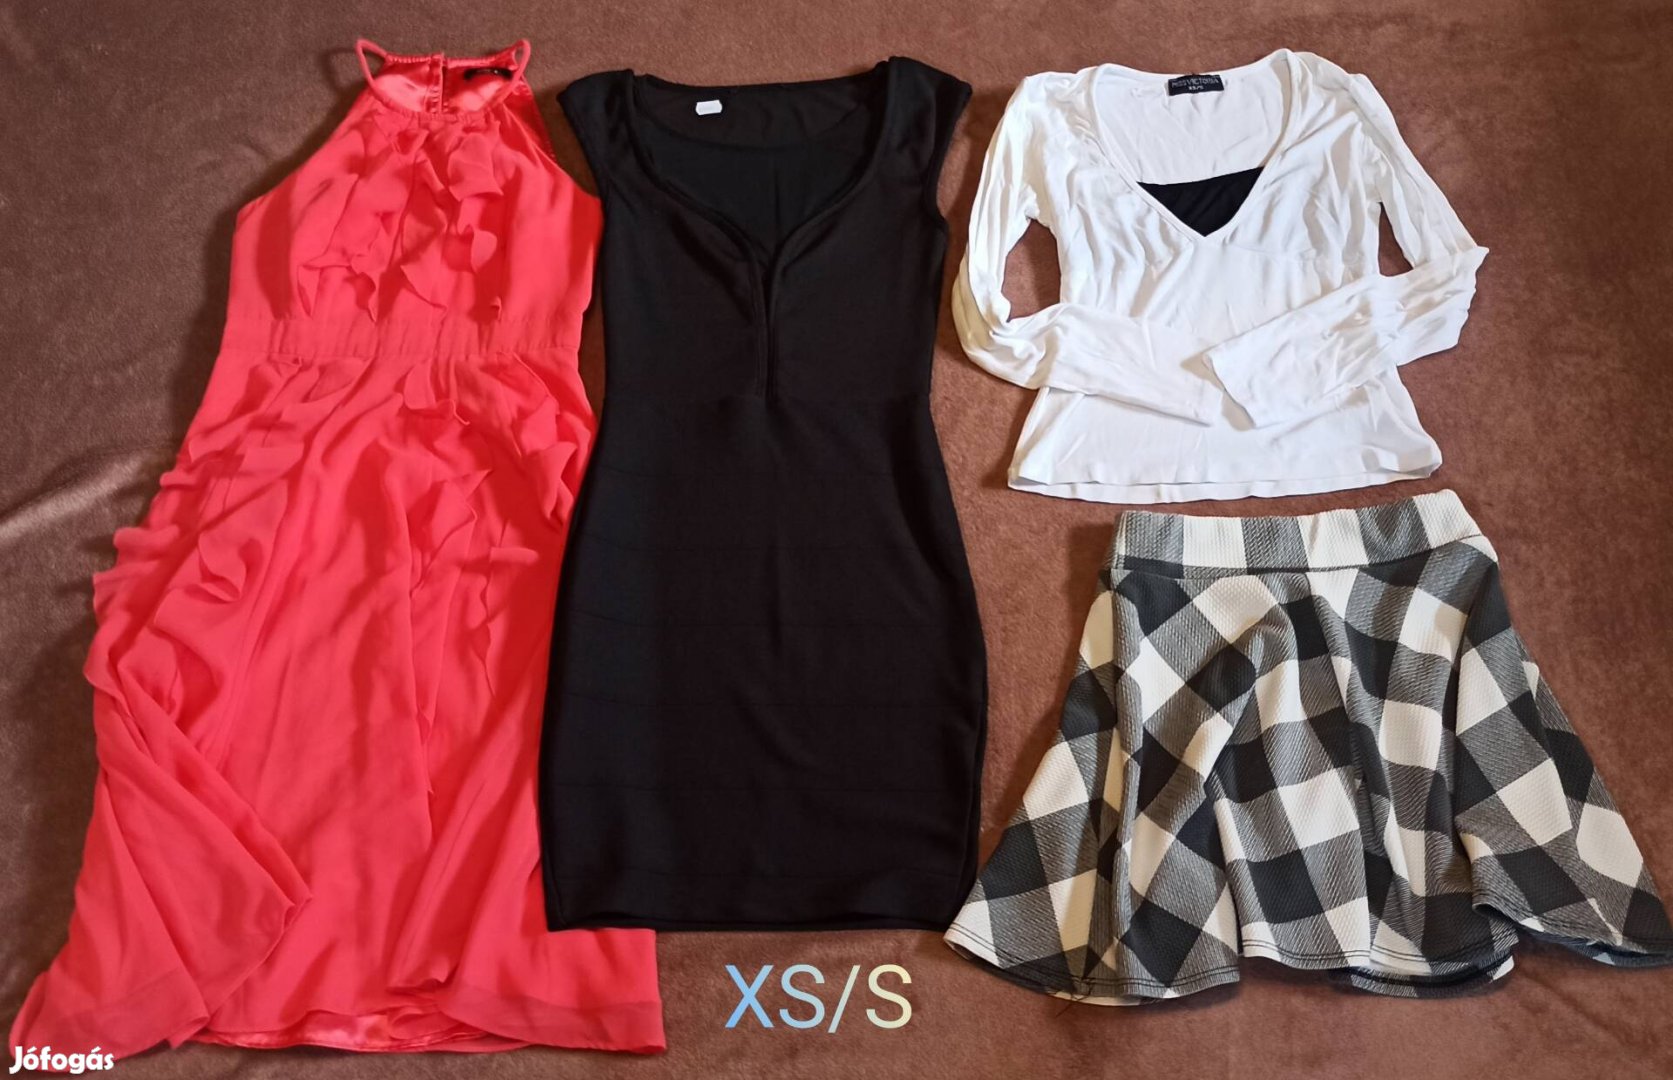 XS/S-es ruha, szoknya, felső